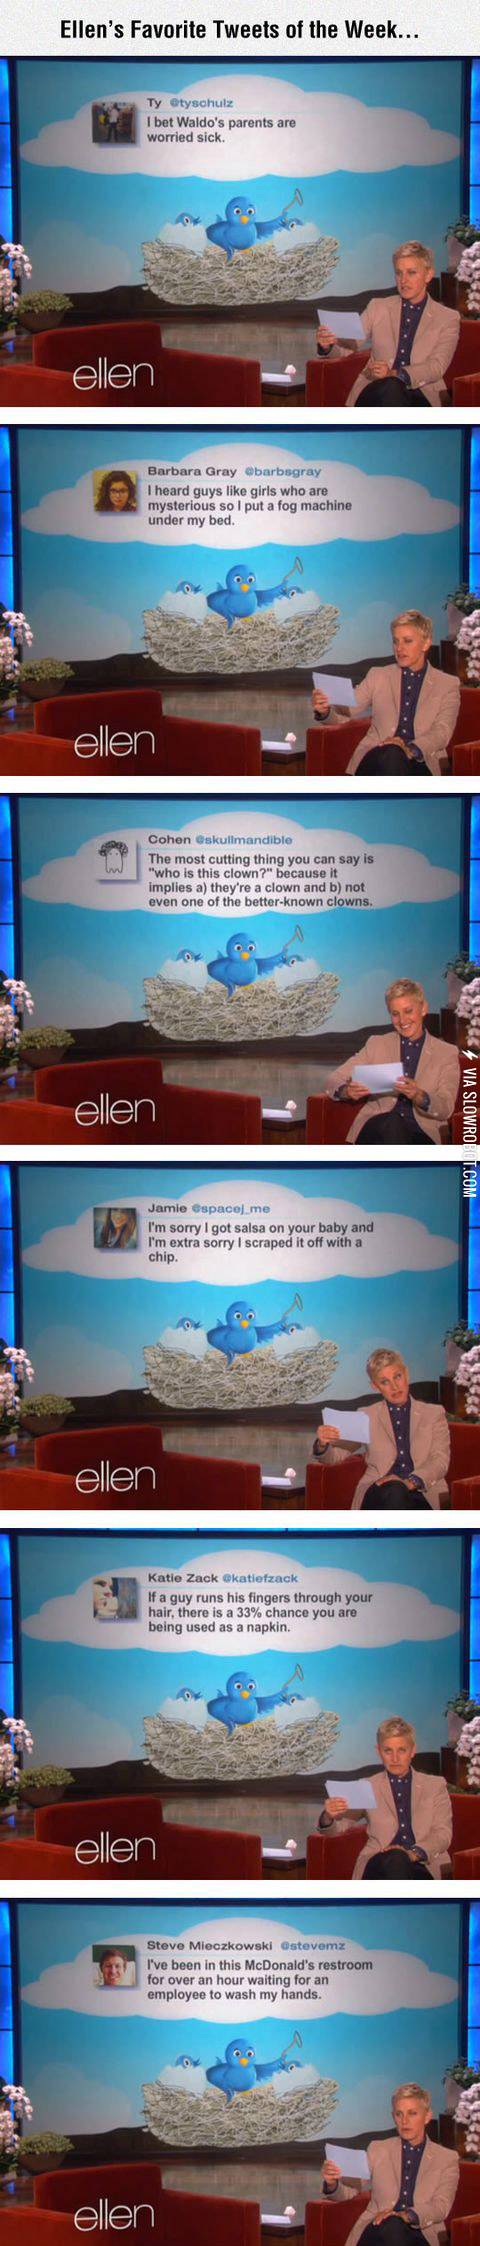 Ellen%26%238217%3Bs+favorite+tweets+of+the+week.